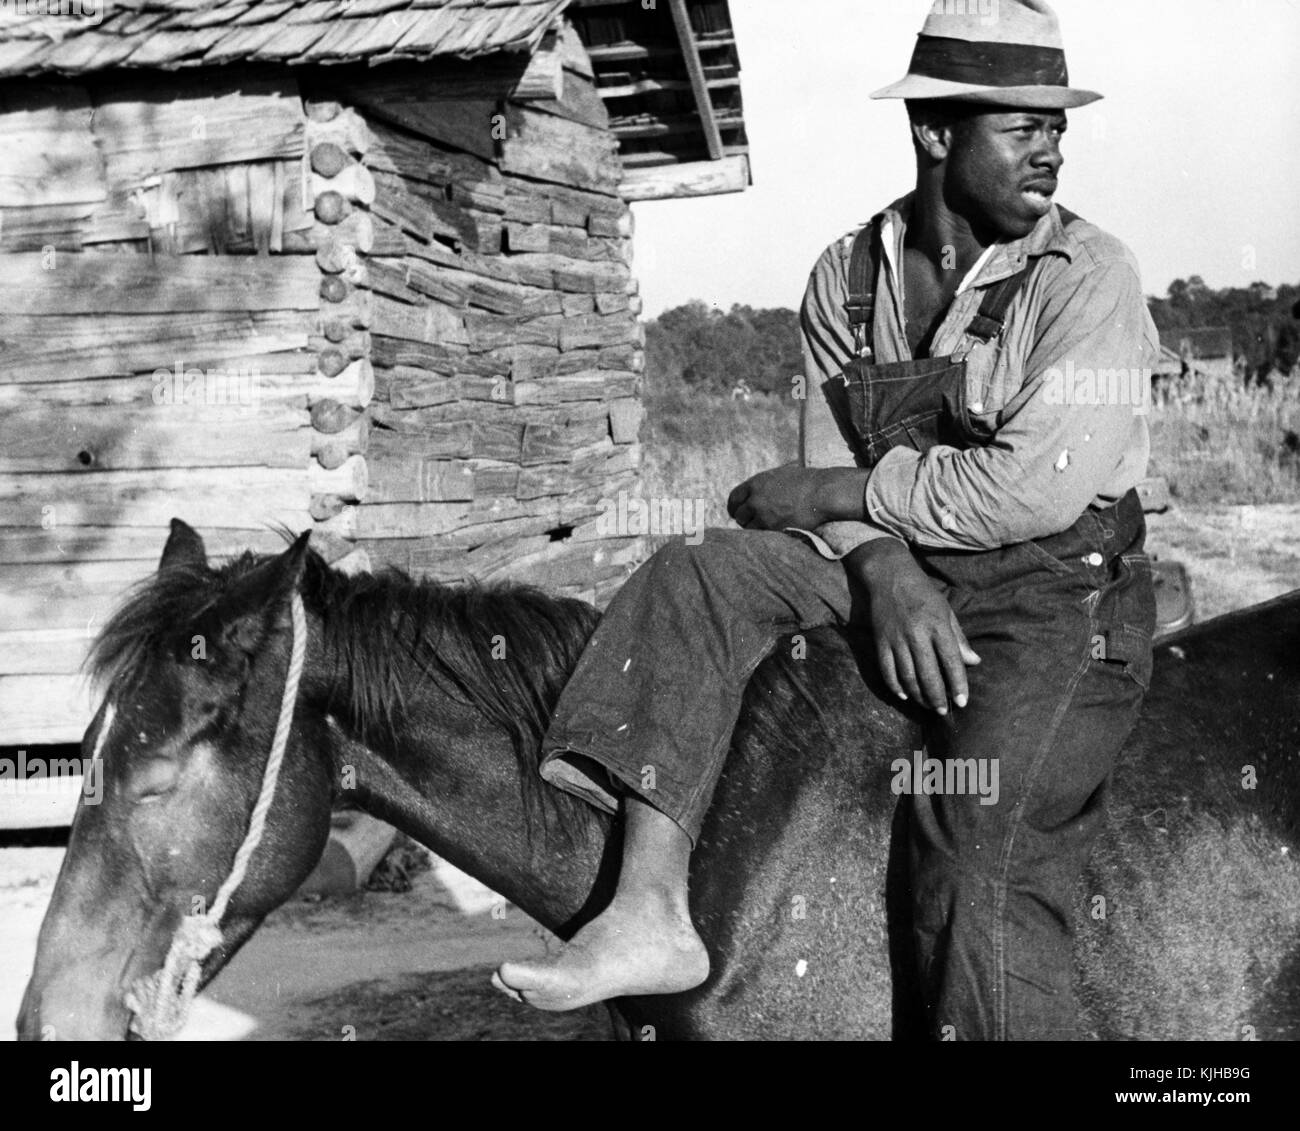 Ein Foto von einem Mann in Jeans Overalls gekleidet, ein Hemd und Hut sitzt auf dem Rücken eines Pferdes, er ist eine Erdbeere Picker, der seine Schuhe entfernt hat, während sie eine Pause, eine hölzerne Gebäude und Felder hinter ihnen gesehen werden können, Hammond, Louisiana, 1935. Von der New York Public Library. Stockfoto